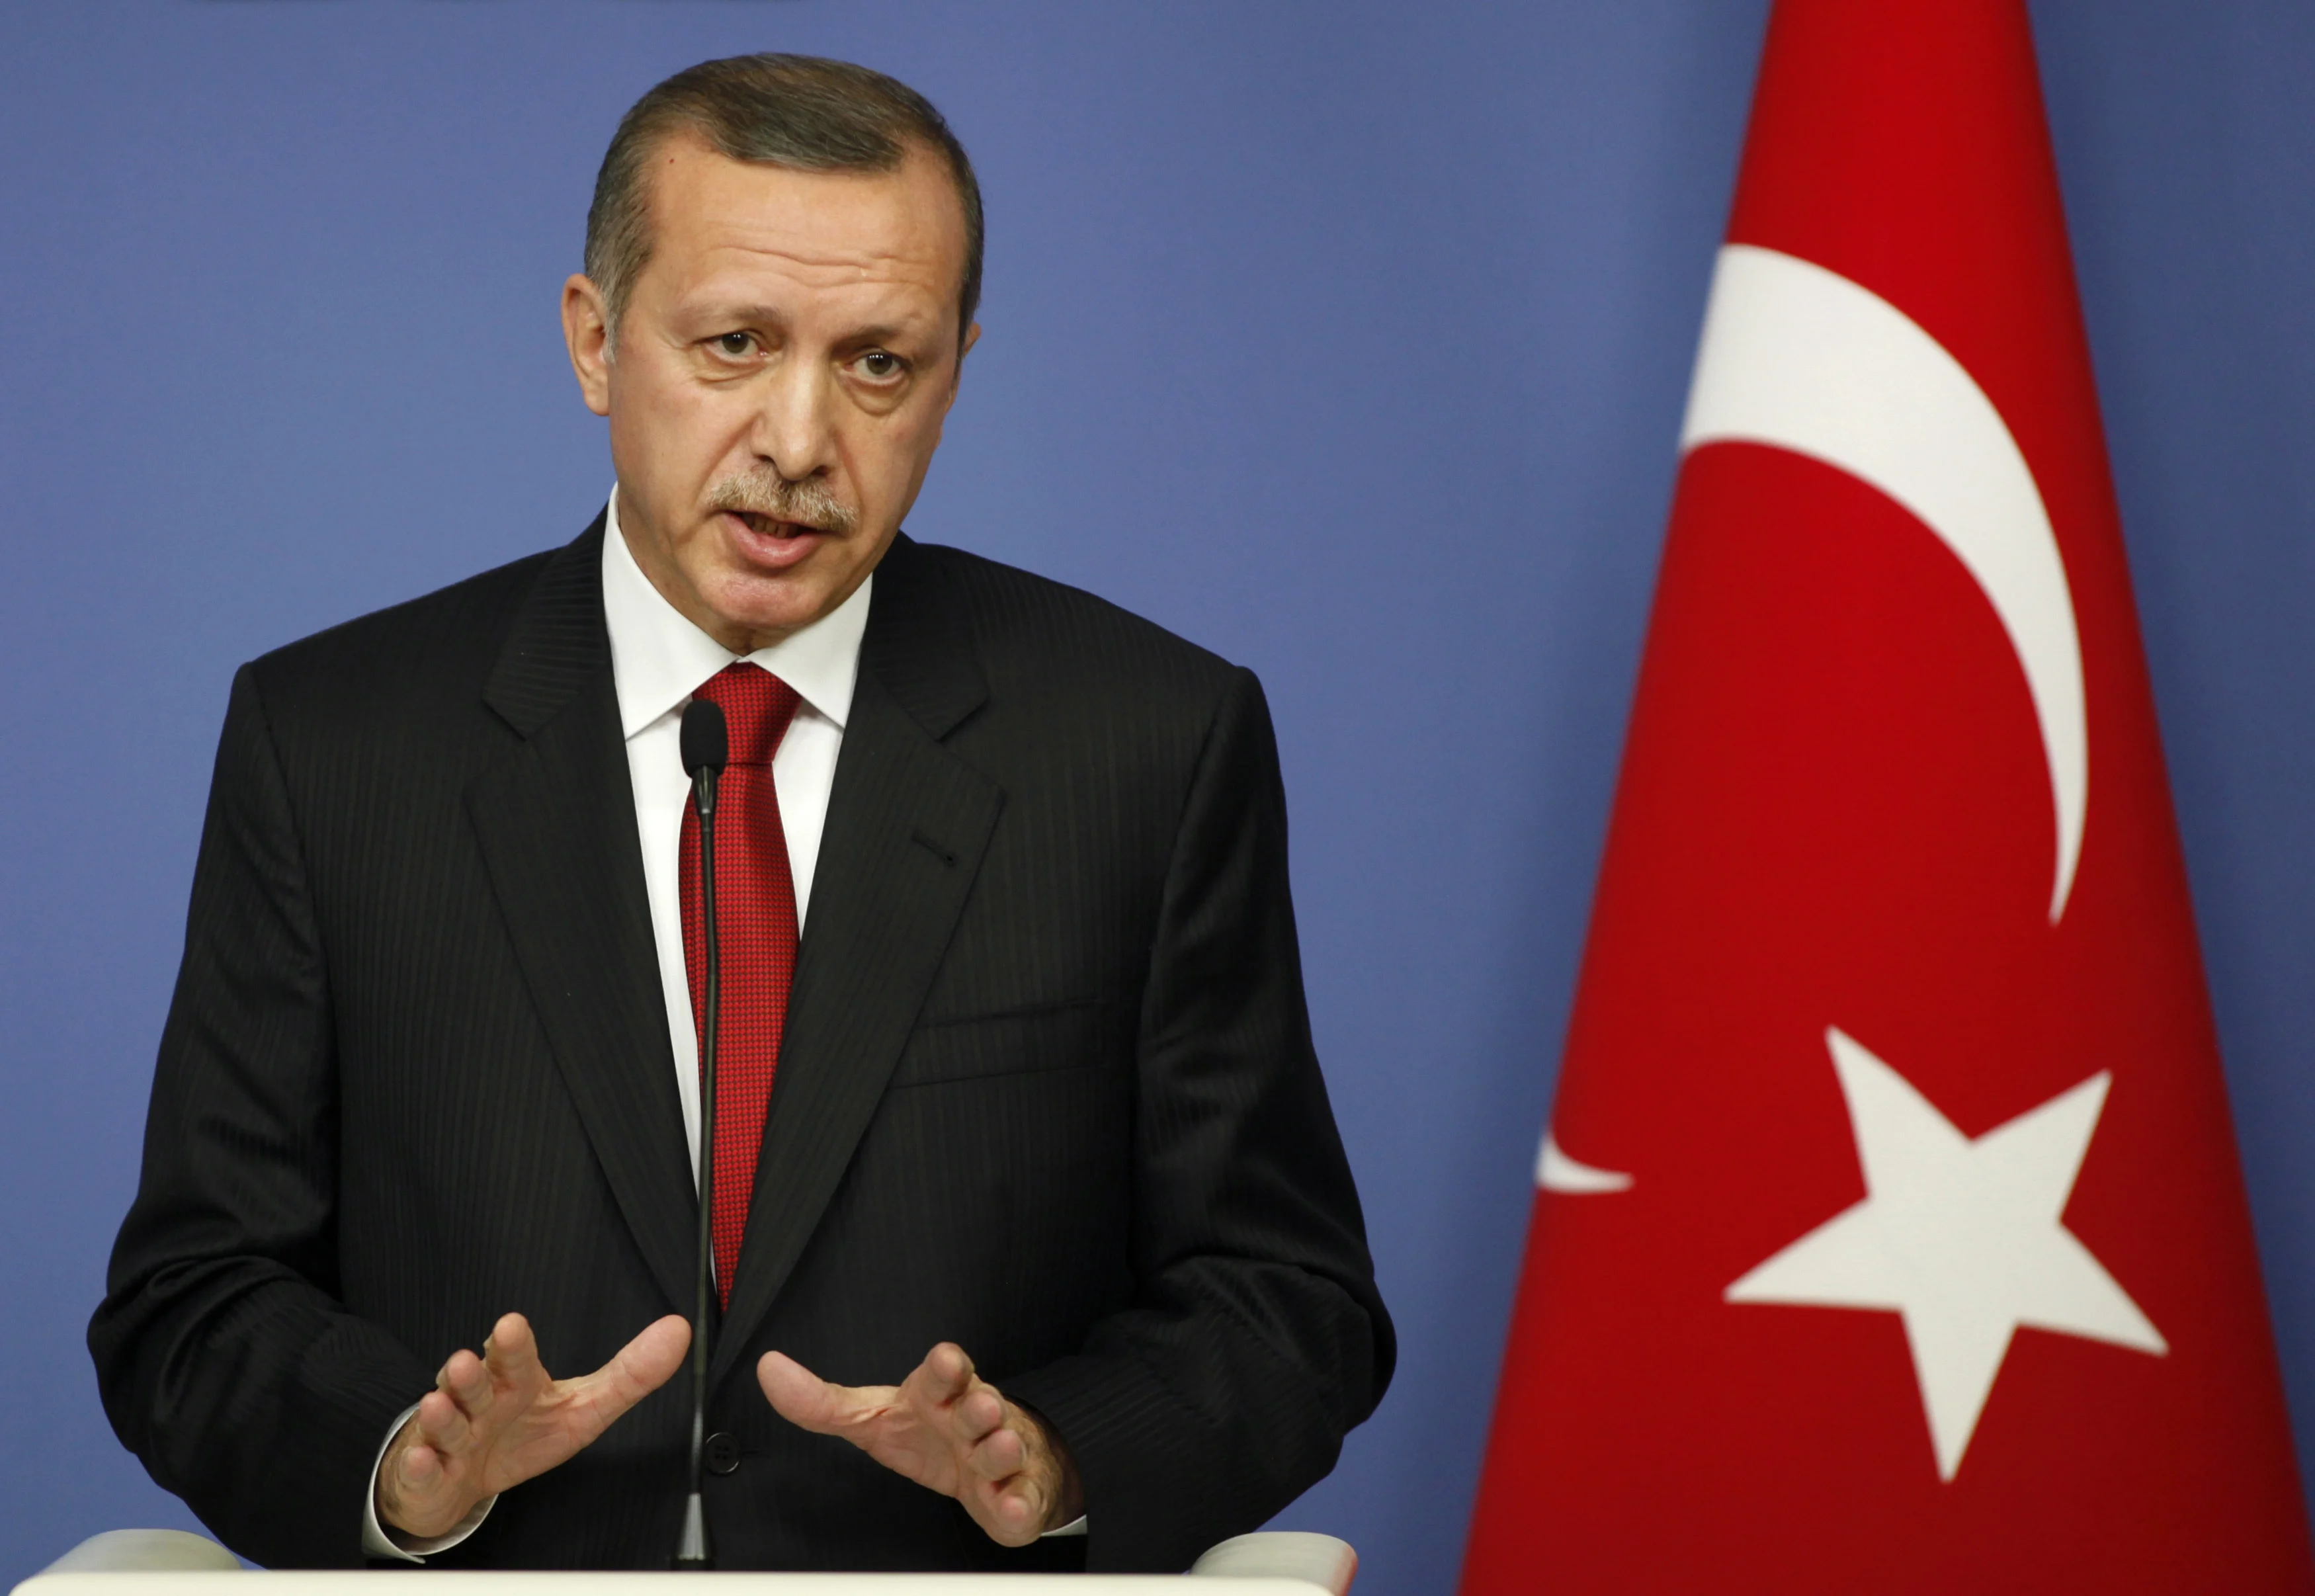 נשיא טורקיה, רג'פ טאיפ ארדואן, מודיע על ניתוק היחסים עם צרפת